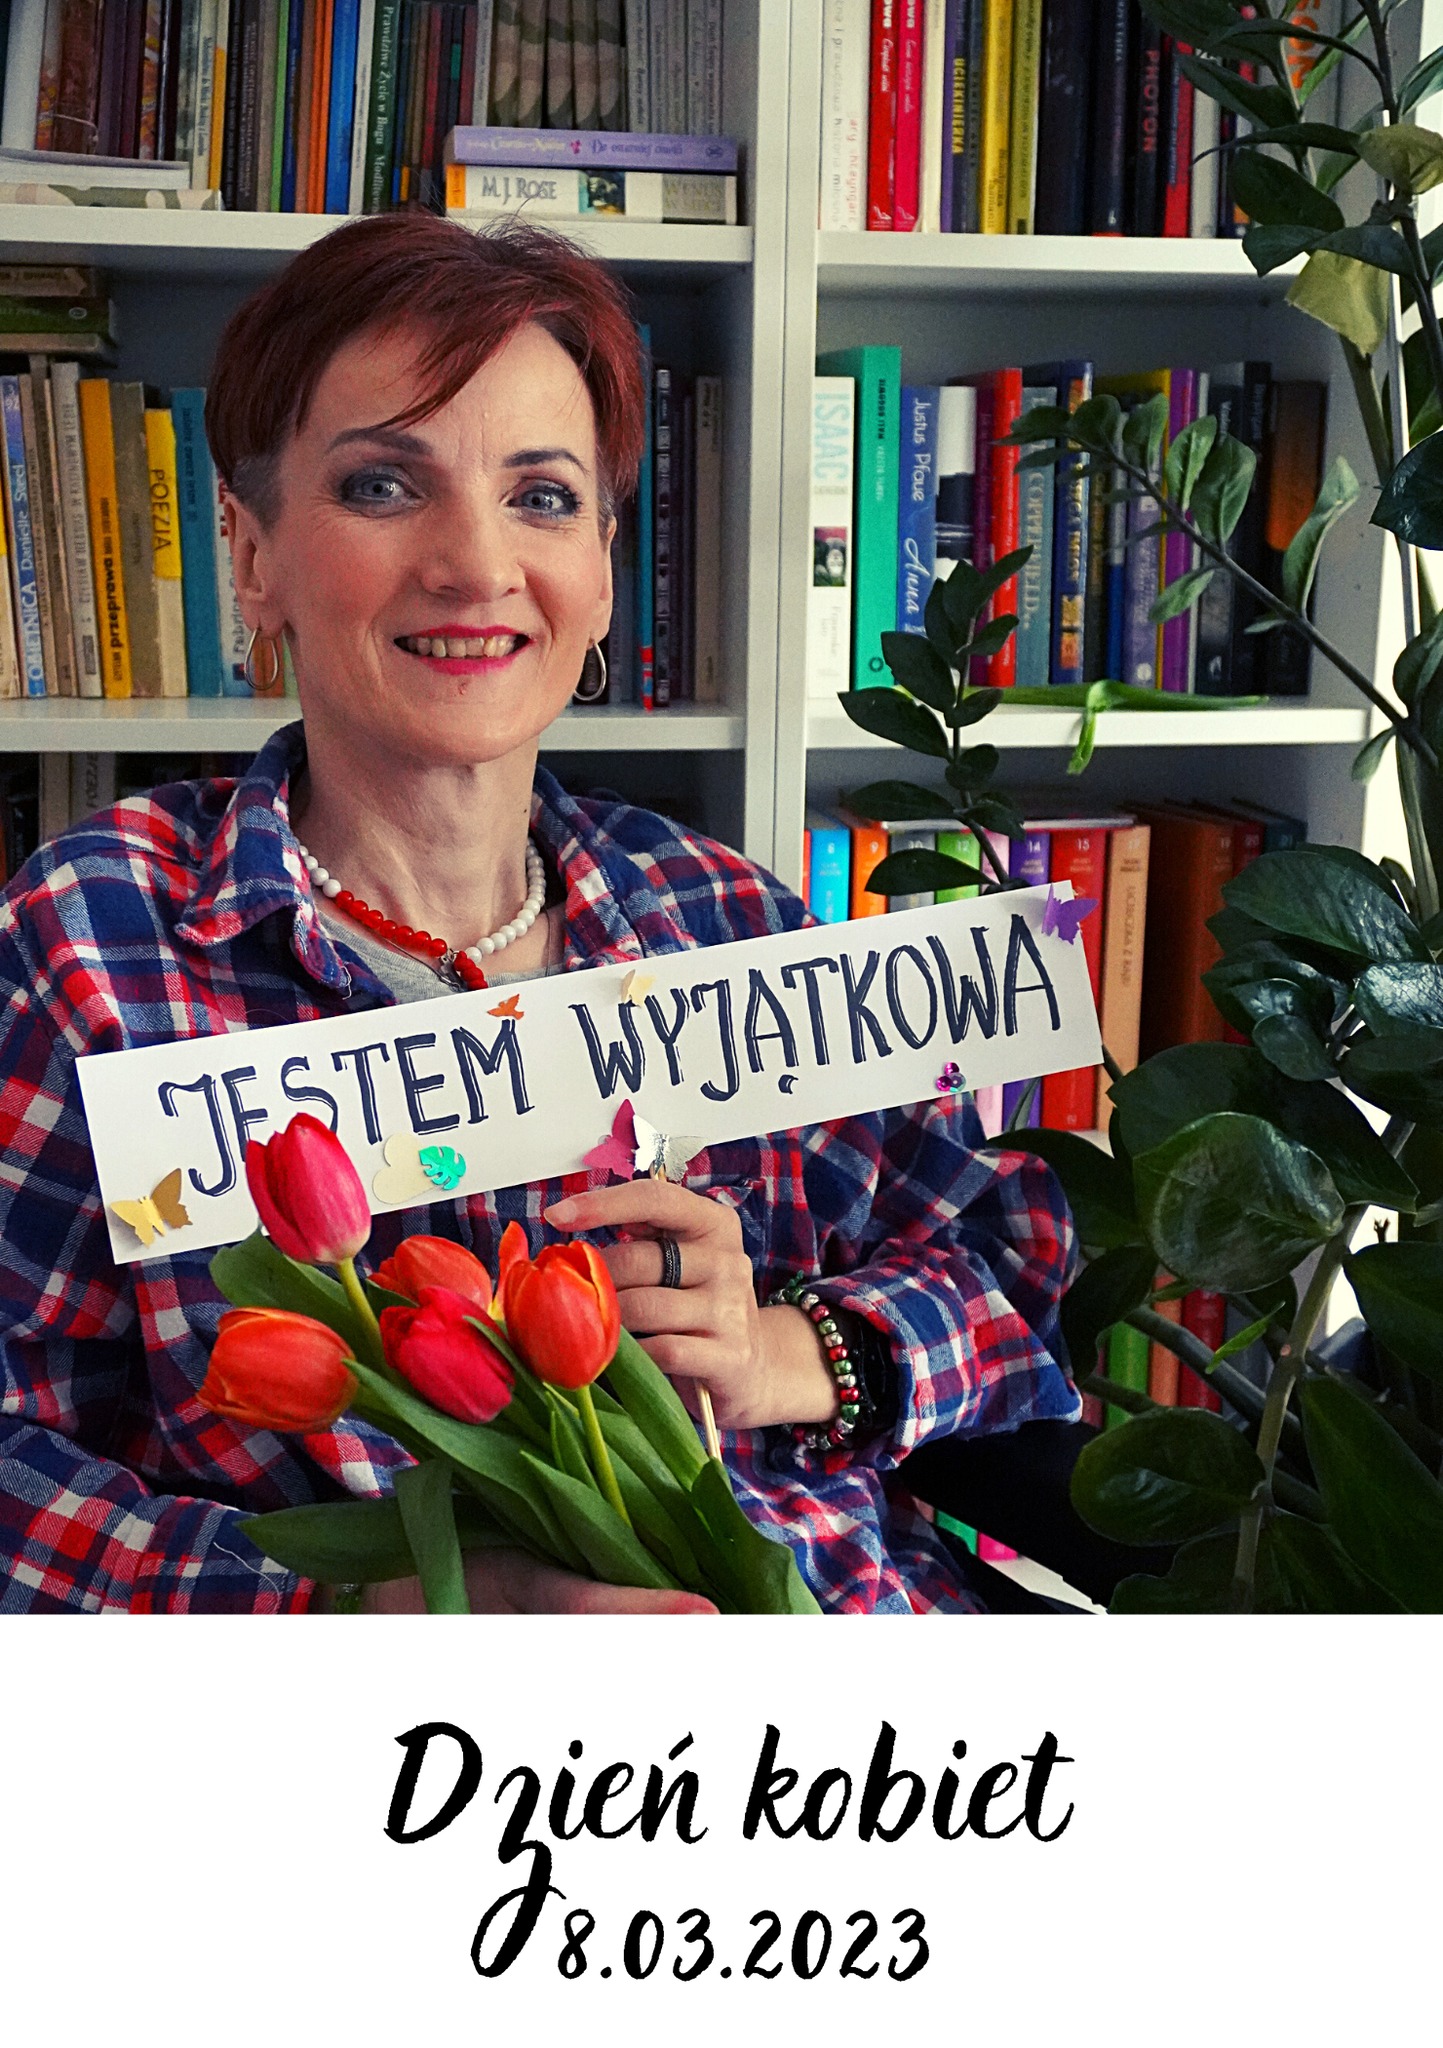 Zdjęcie starsze Pani z kwiatami, która trzyma tabliczkę z napisem "Jestem wyjątkowa".